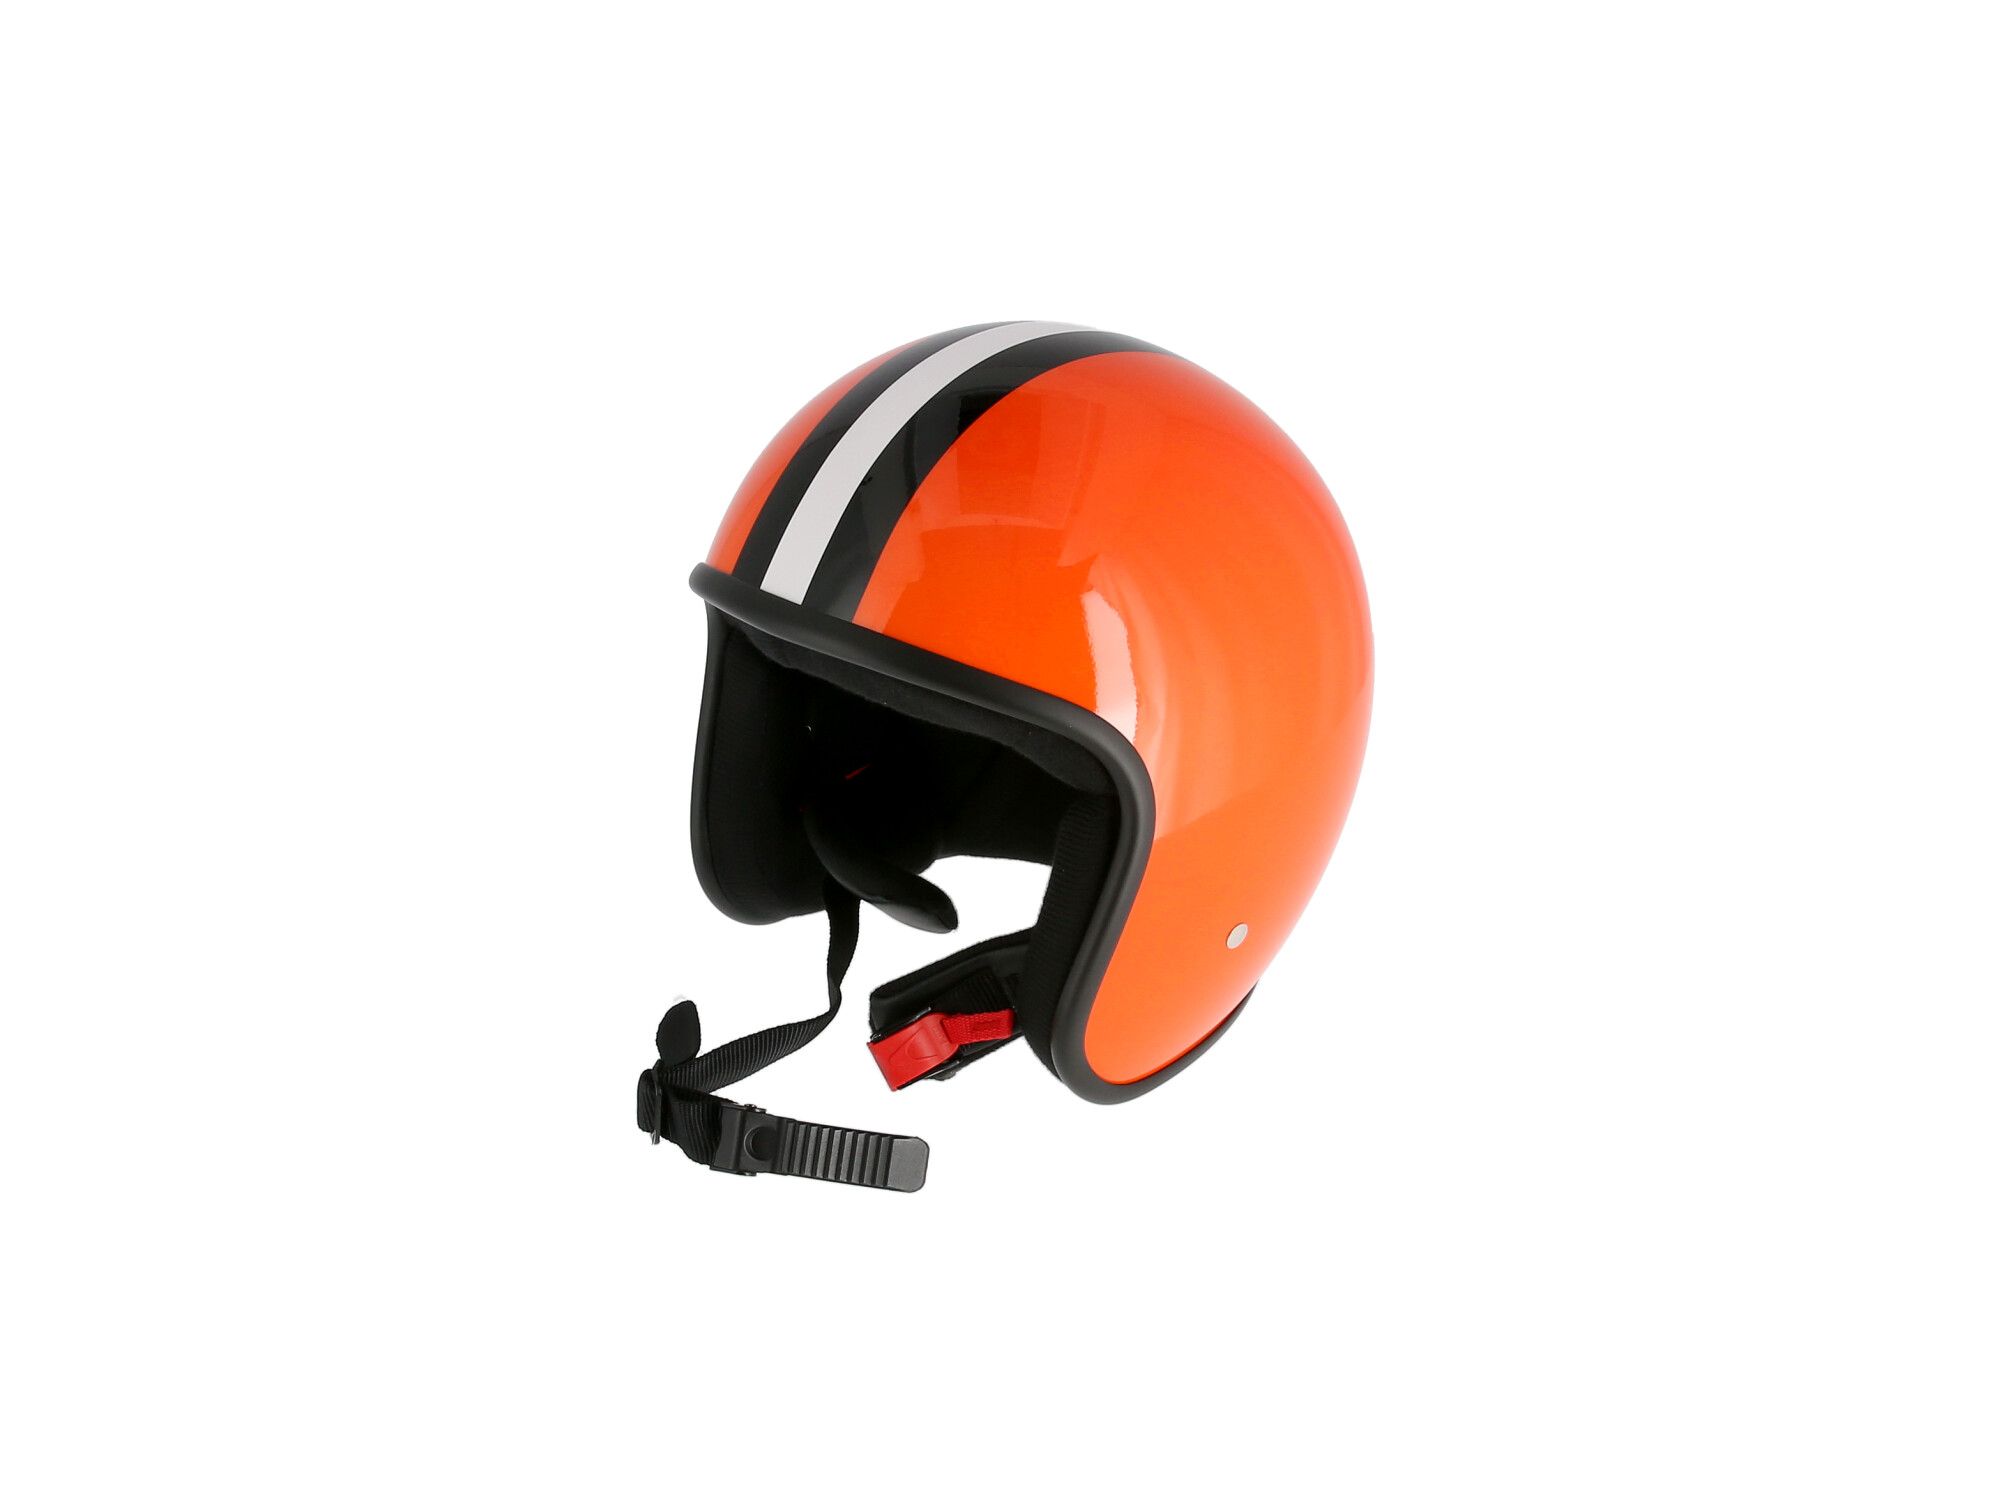 ARC Helm "Modell A-611" Retrolook - Orange mit Streifen, Art.-Nr.: 10071216 - 360° Bild